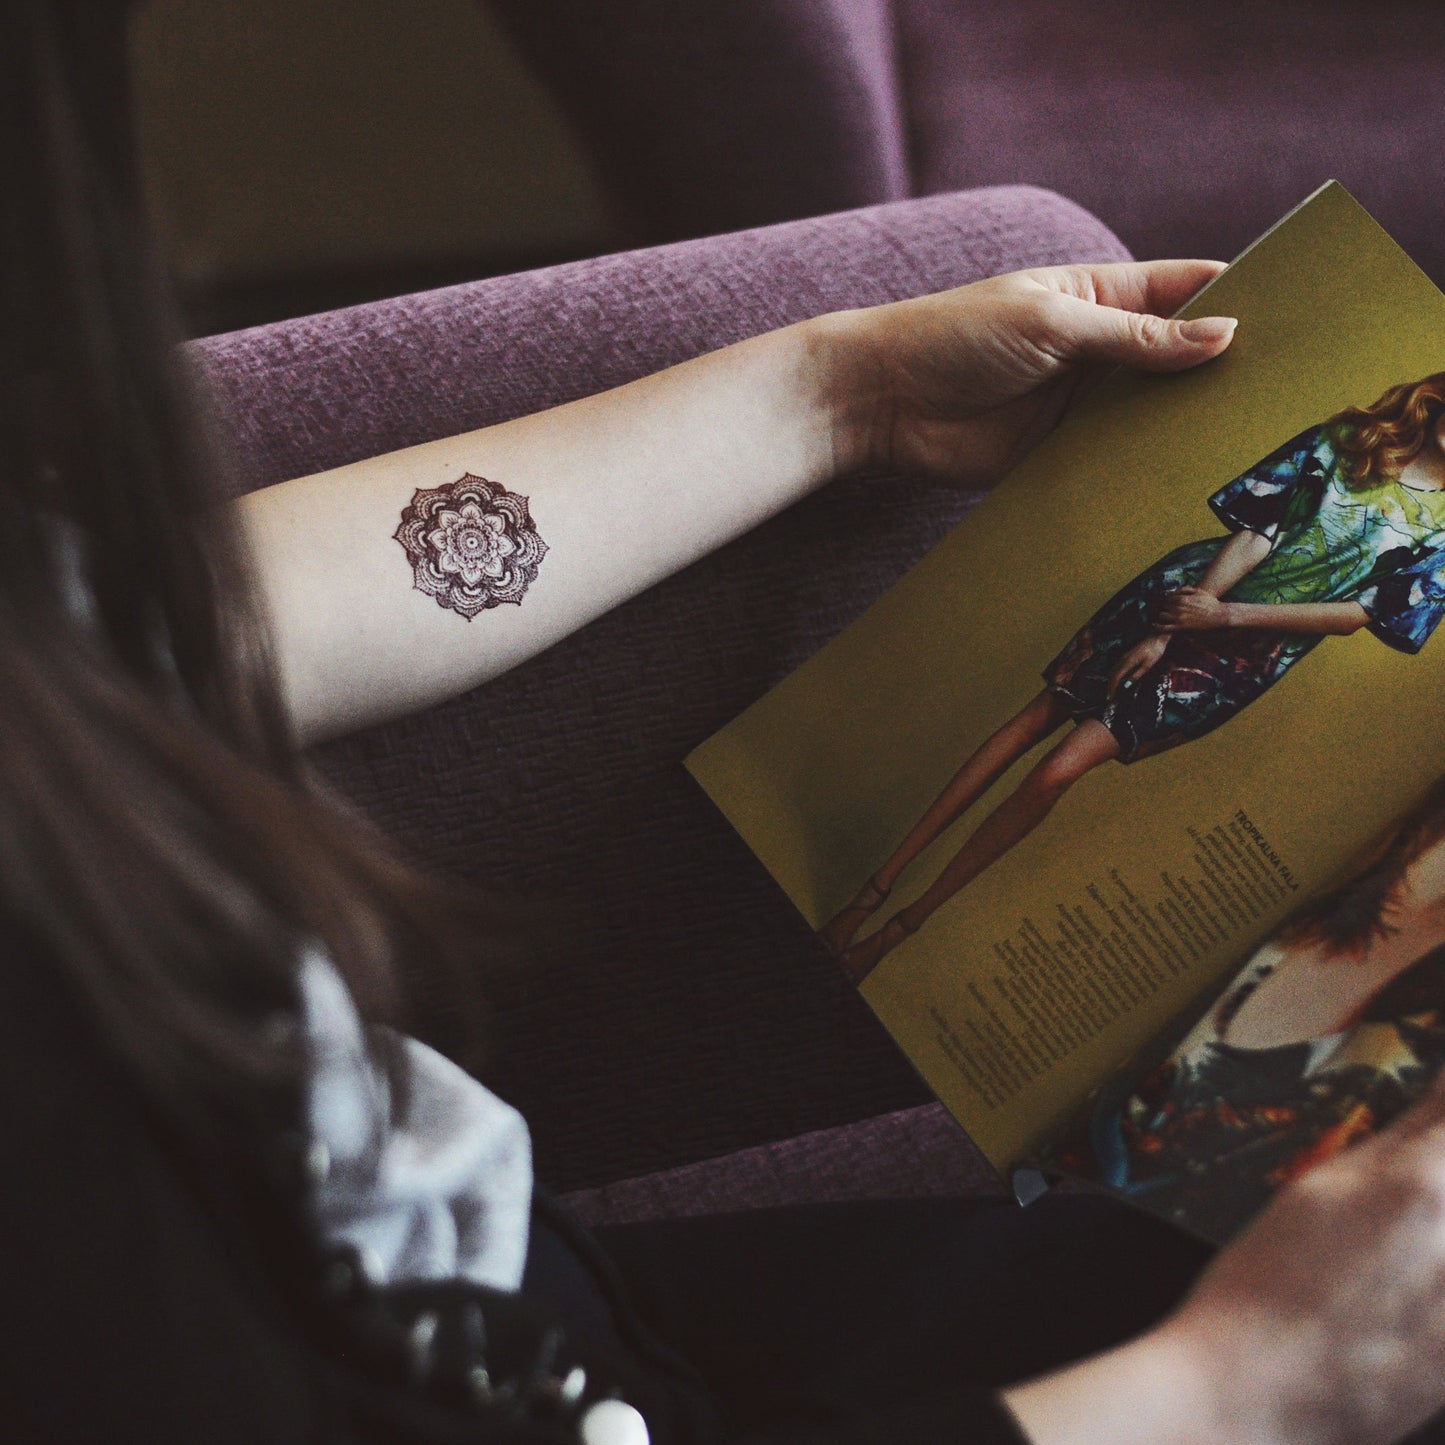 fake small mandala color bohemian temporary tattoo sticker design idea on forearm